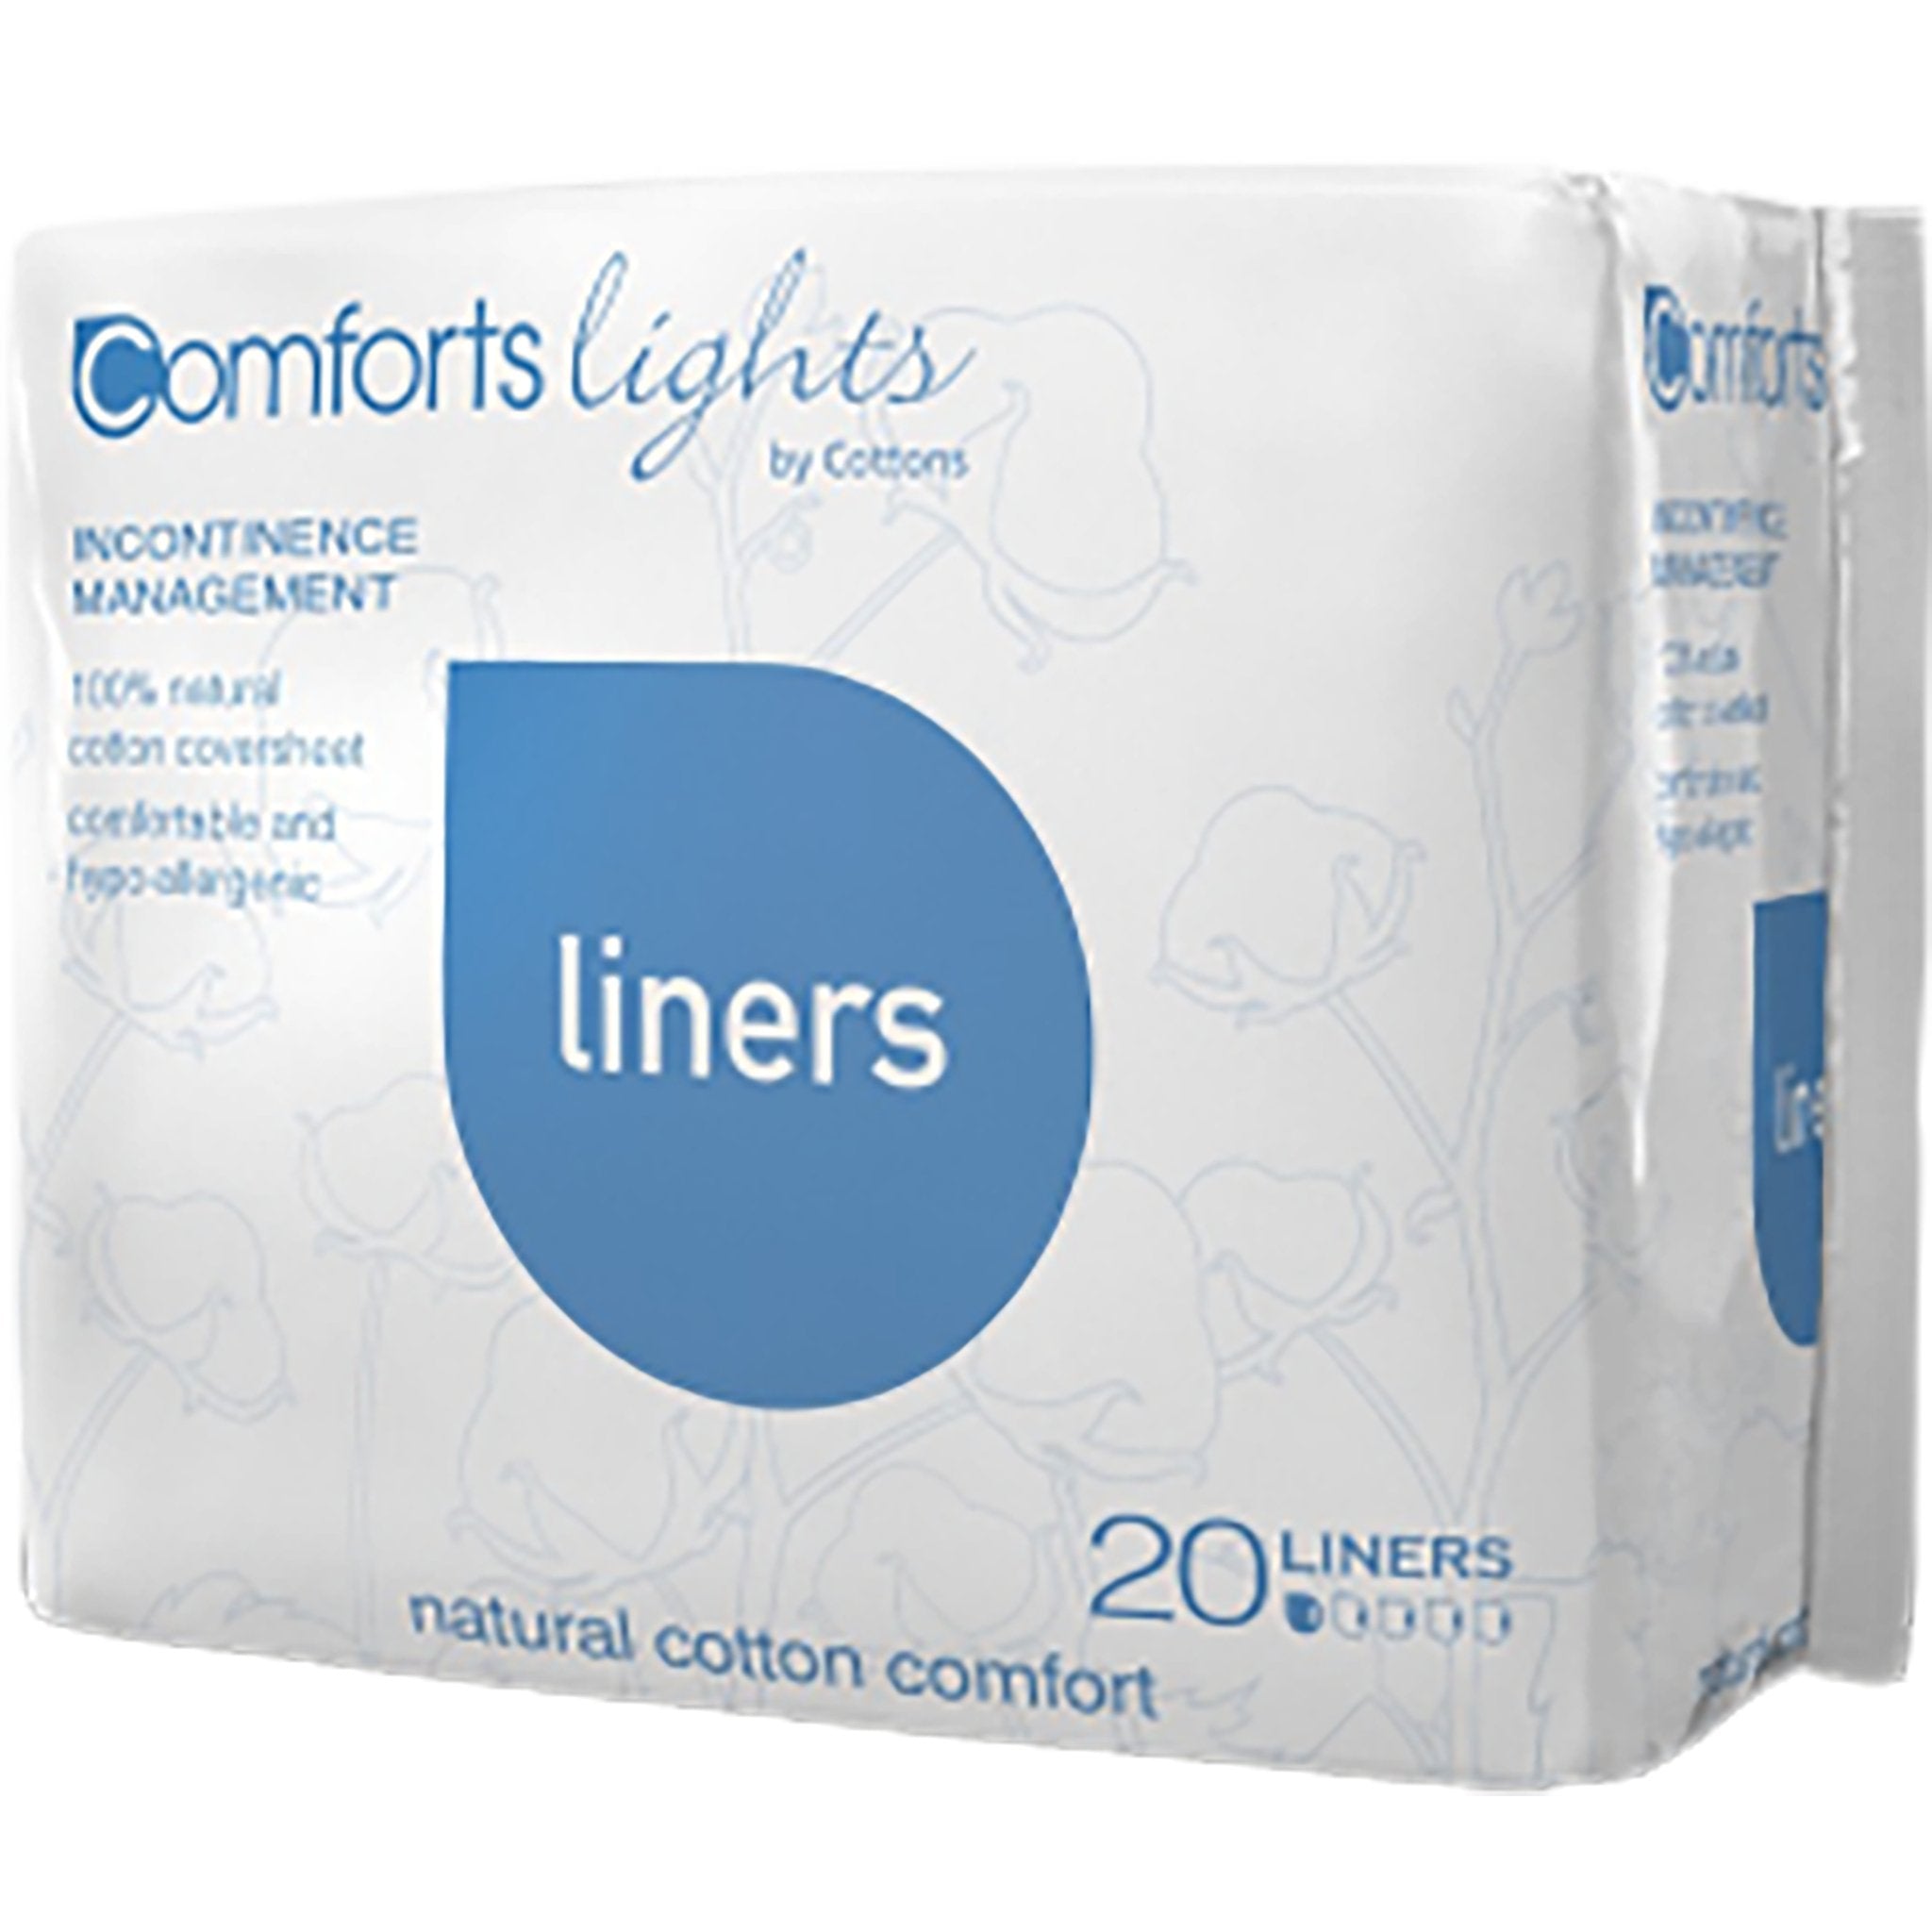 Comfort Lights | Liners